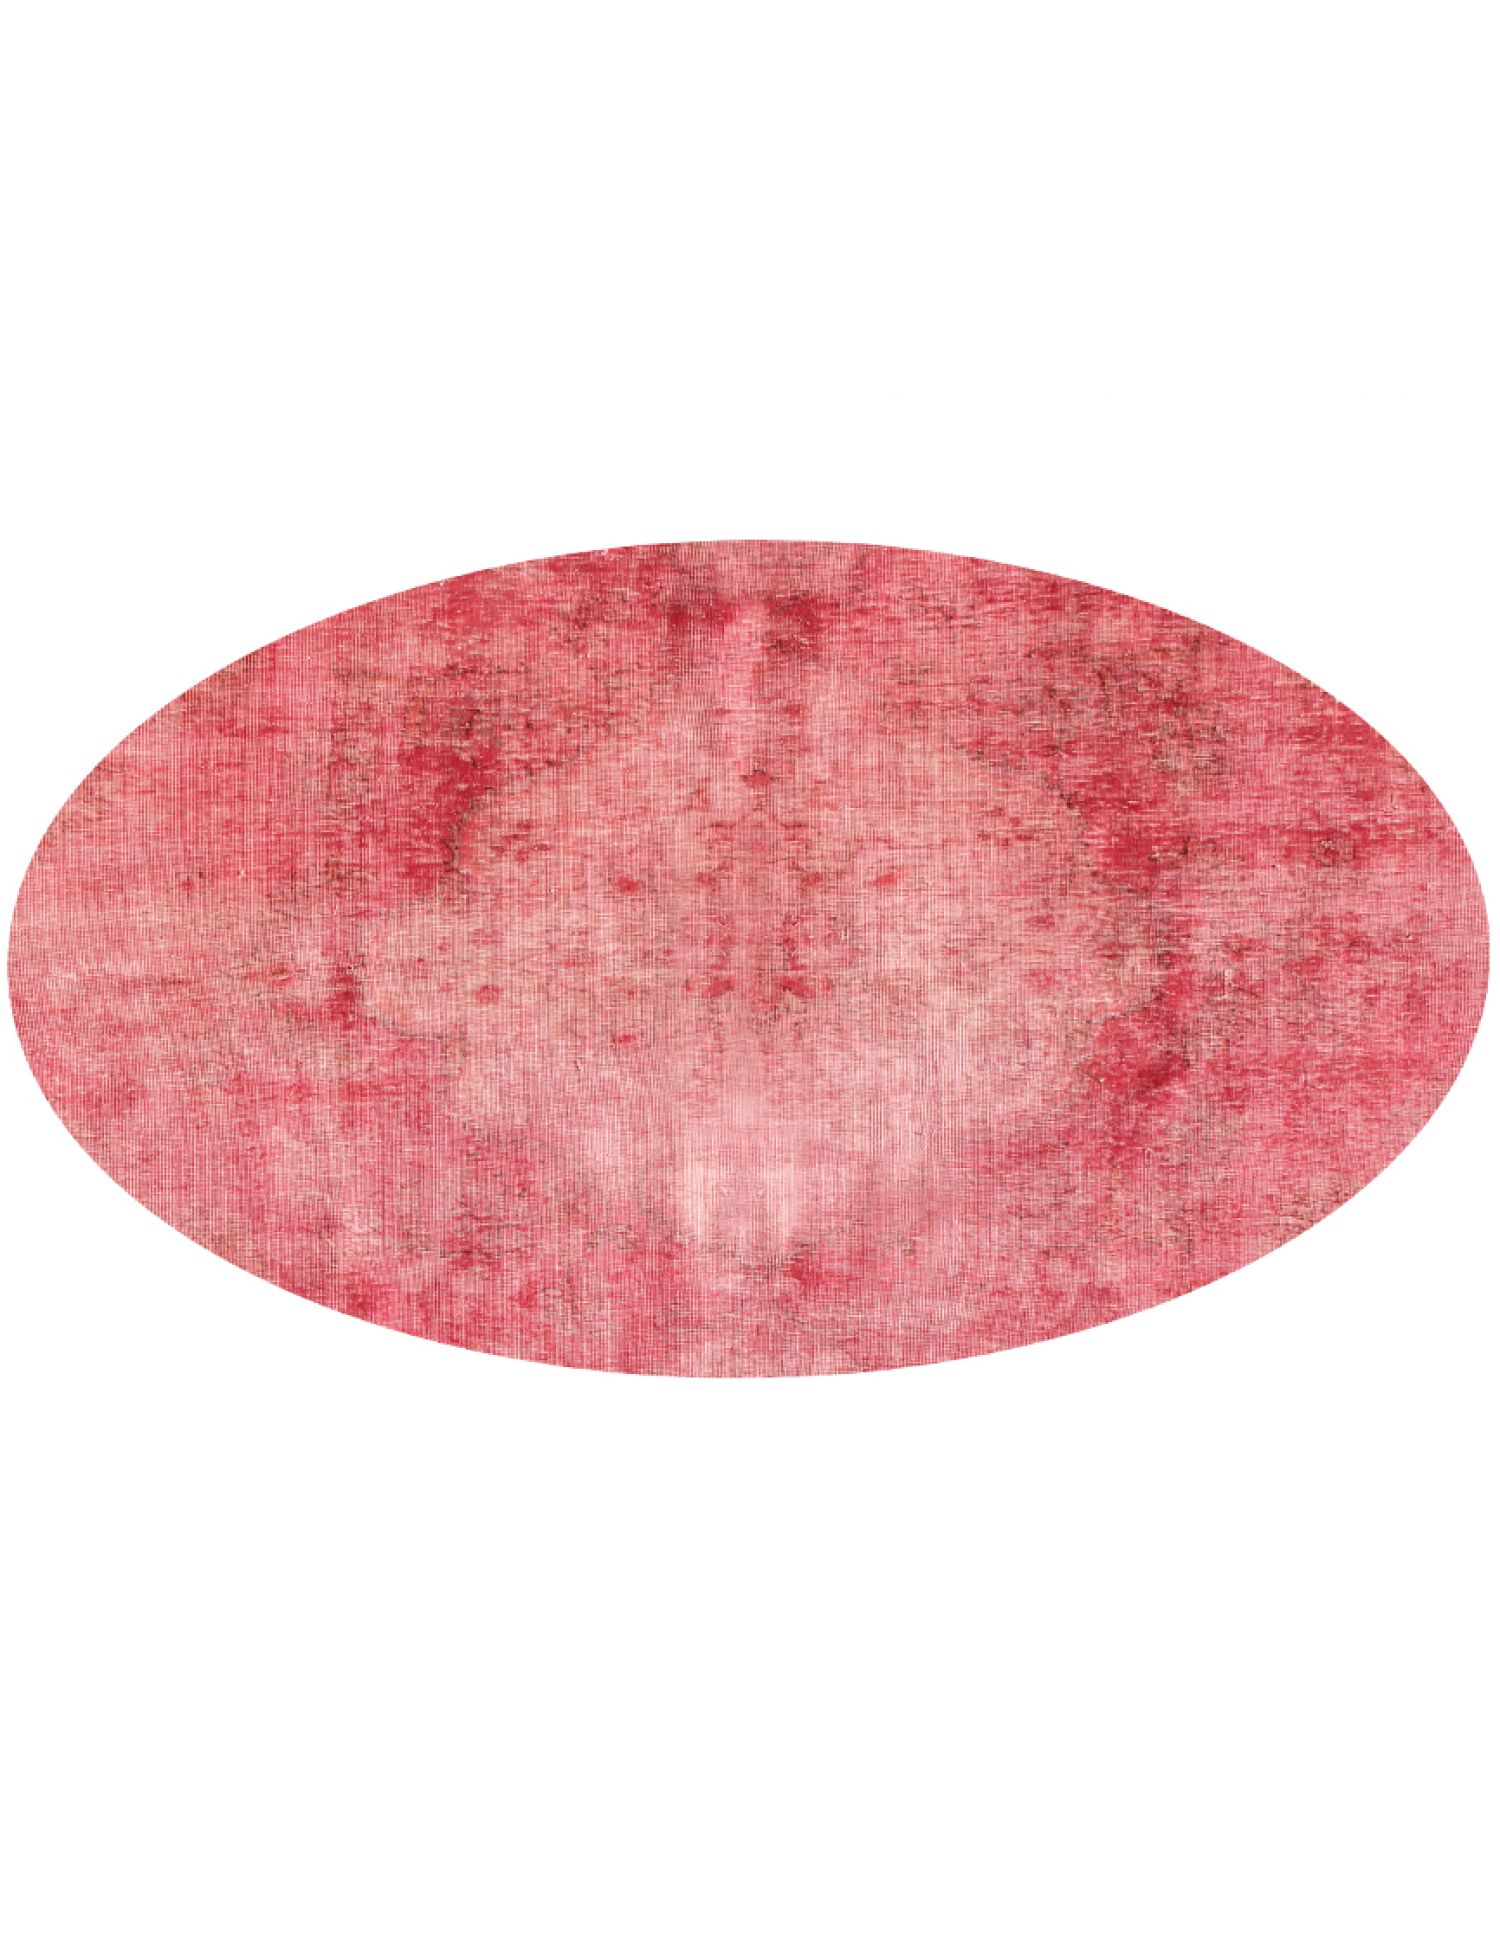 Tappeto vintage persiano  rosa <br/>200 x 200 cm